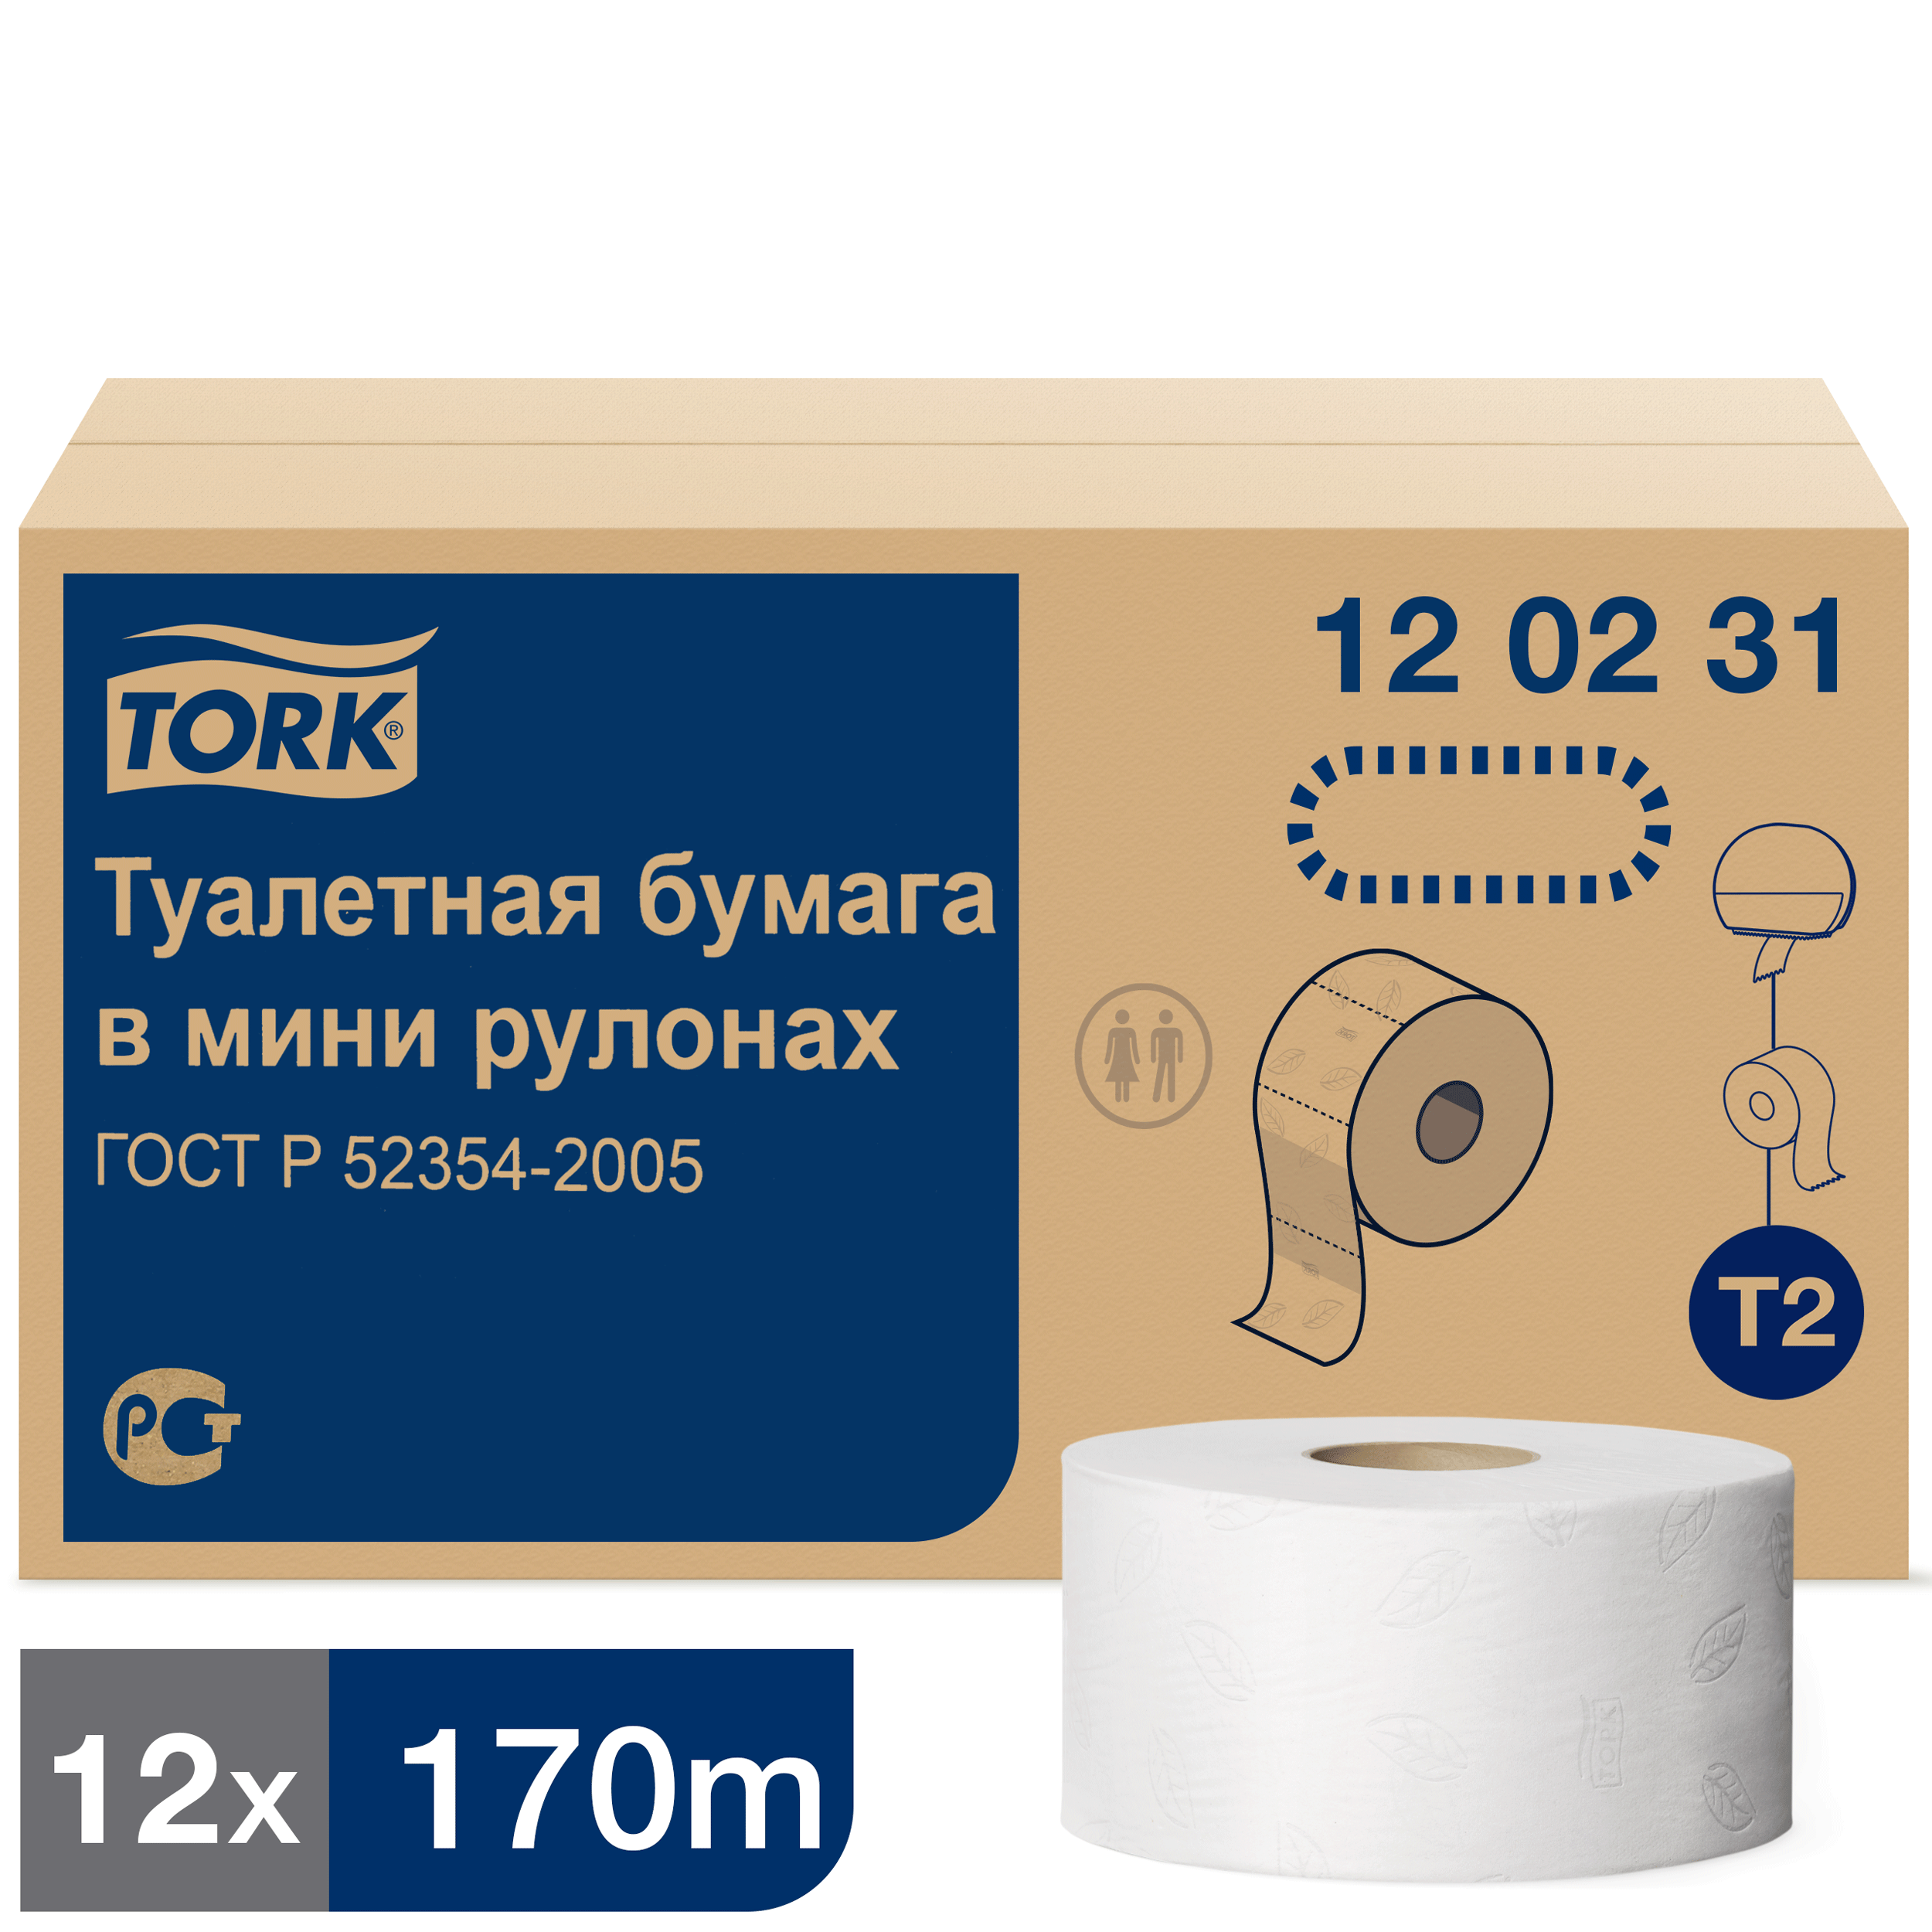 Туалетная бумага Tork Advanced в мини рулонах, T2, 2 сл, 170мХ9,5см, белая, 12 шт туалетная бумага tork advanced 2сл